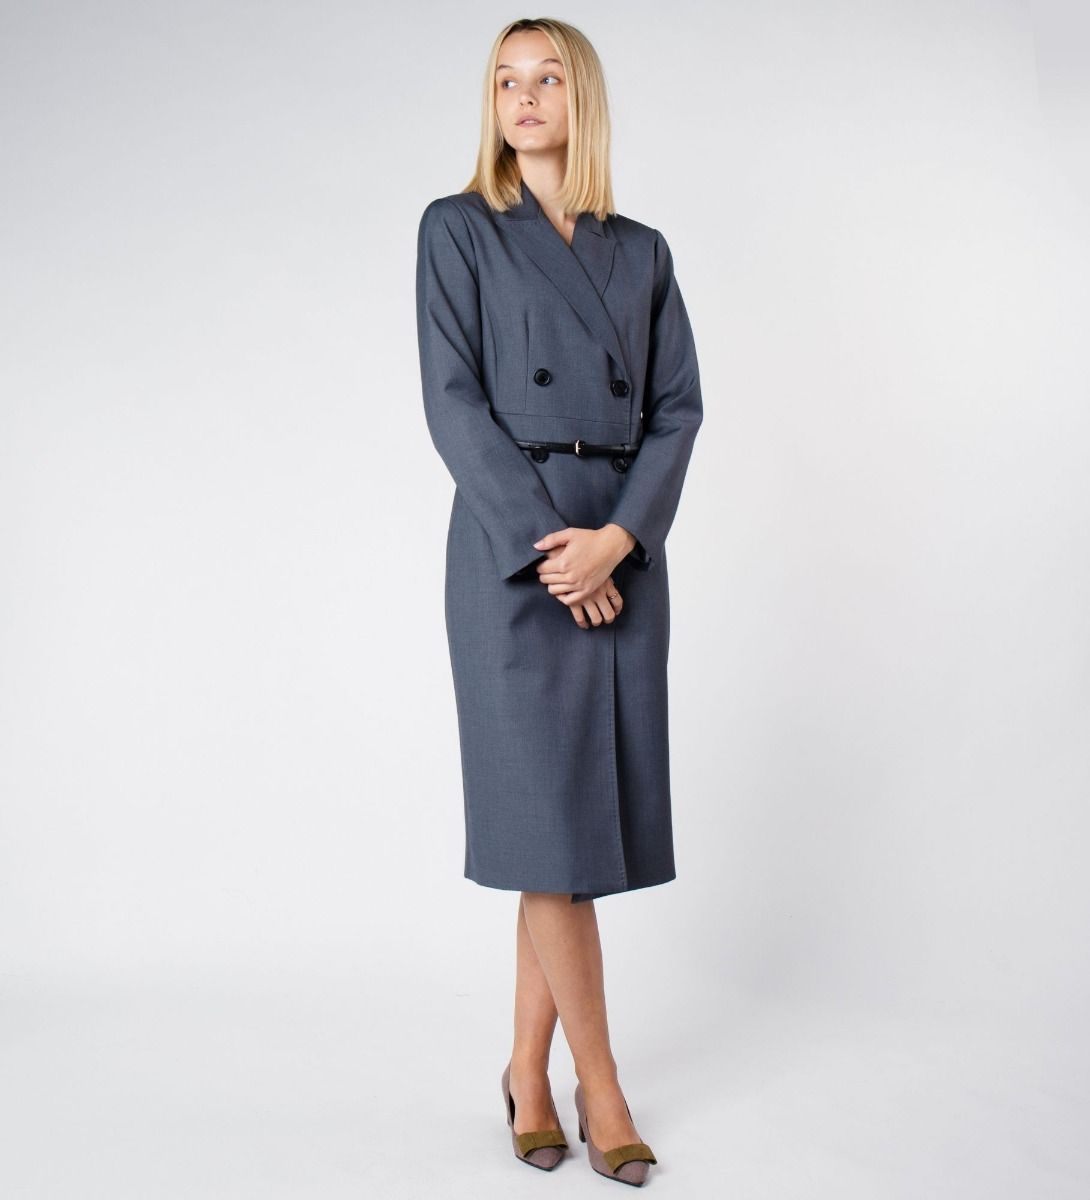 LEEZ Women Wool Blend Midi Dress - Ash Grey